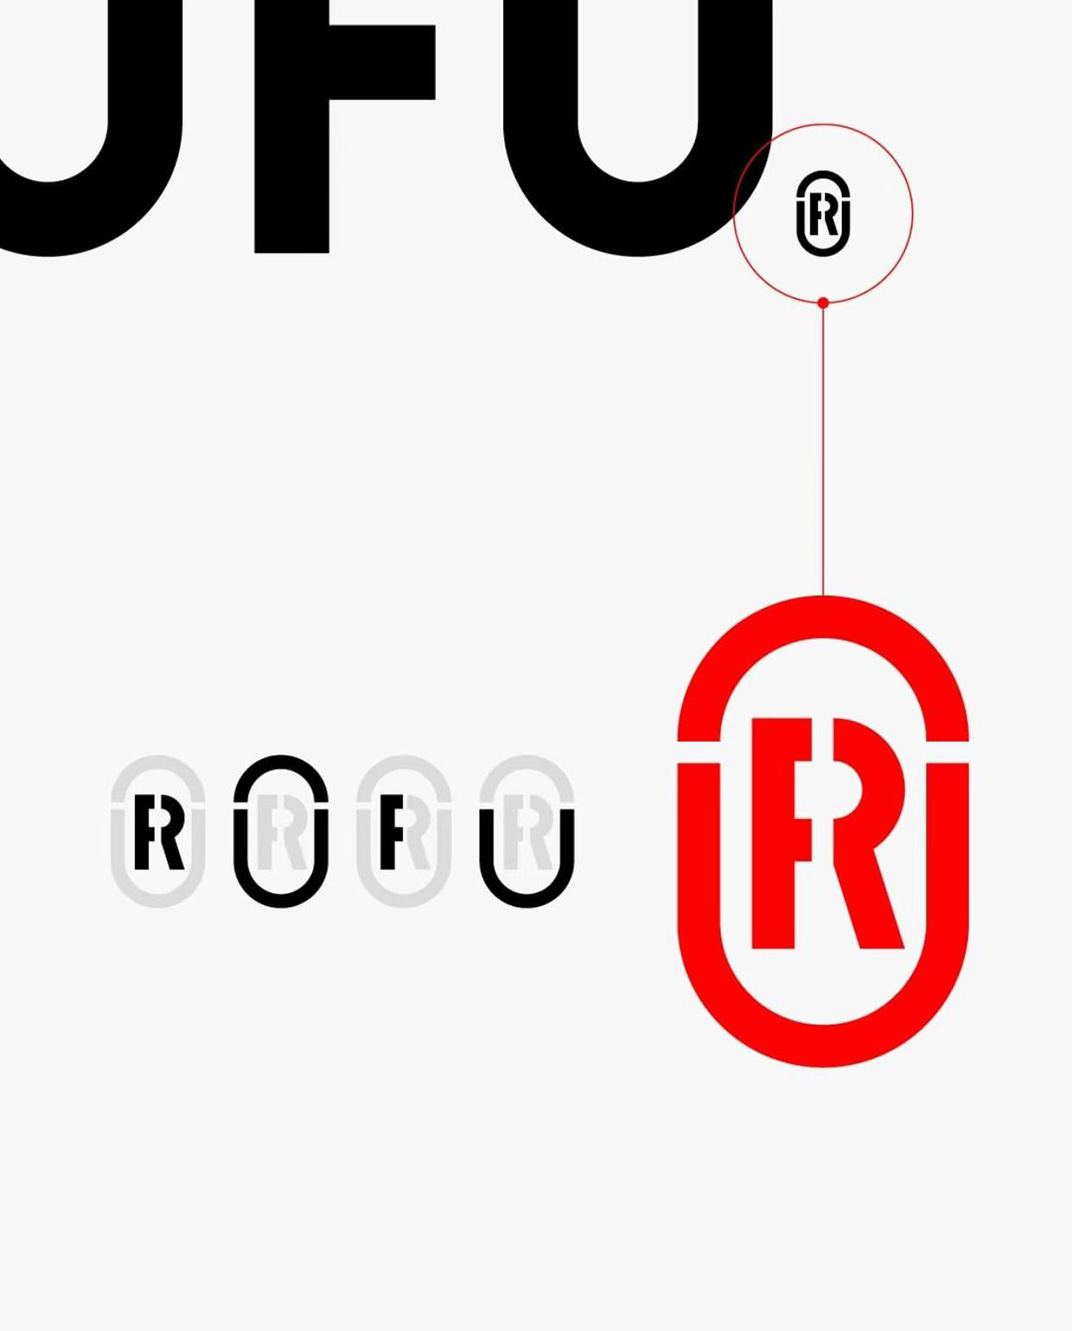 Rofu字体Logo设计 日本 上海 字体设计 符号设计 设计过程 logo设计 vi设计 空间设计